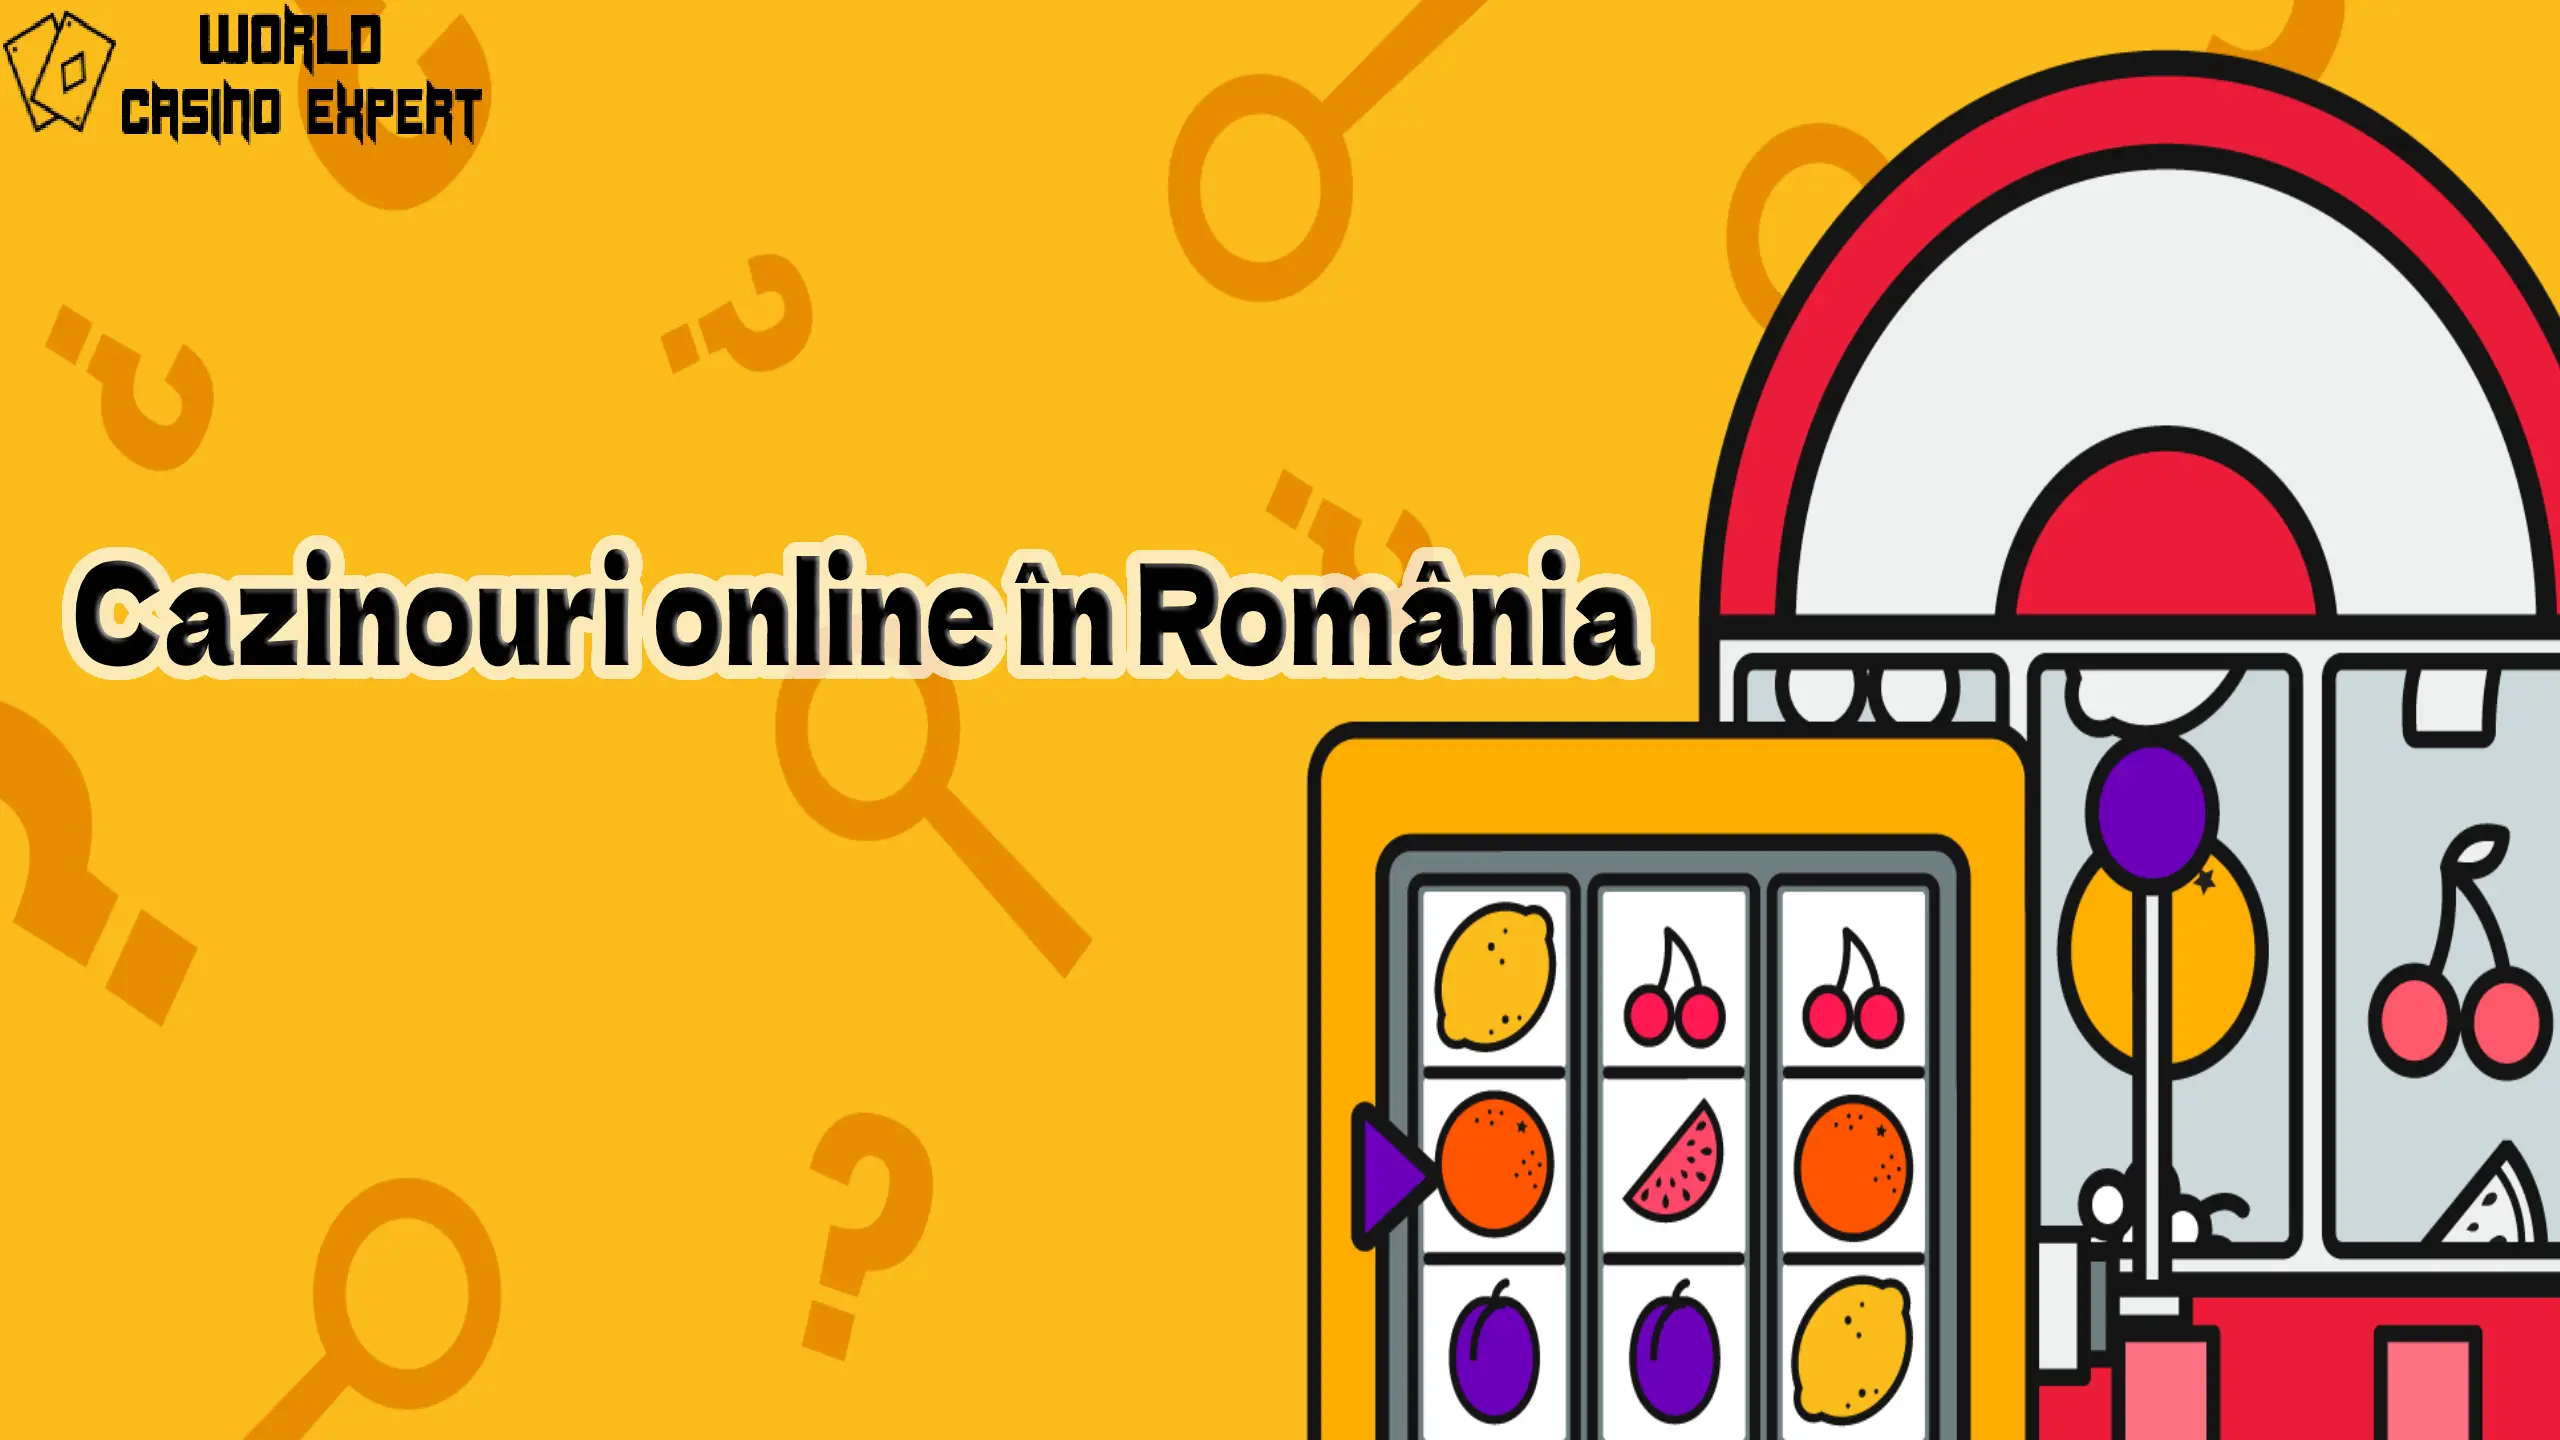 Cazinouri online în România | World Casino Expert Romania